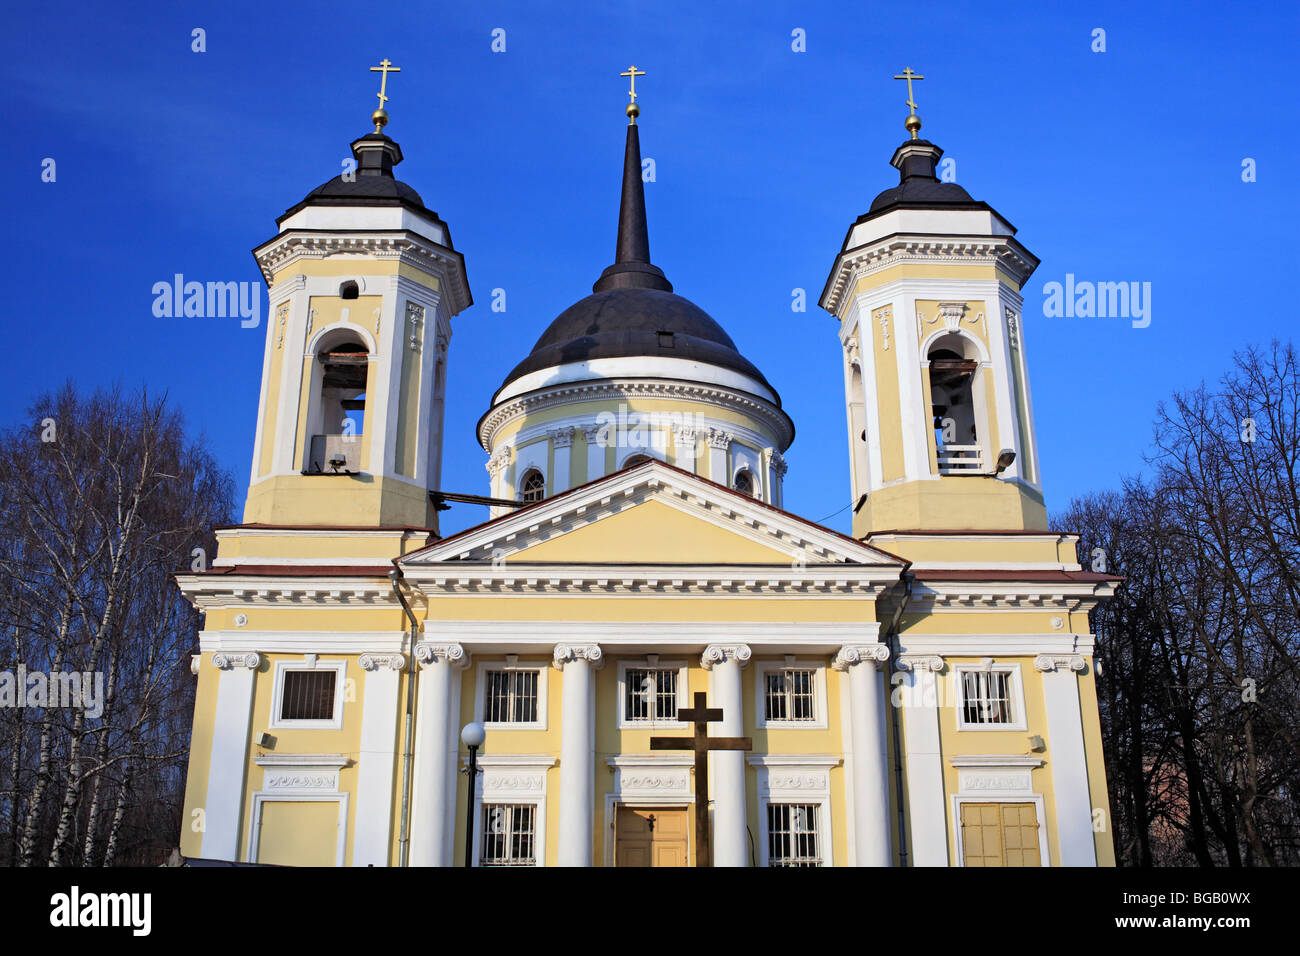 Church of the Transfiguration (1770s), Balashikha, Moscow region, Russia Stock Photo